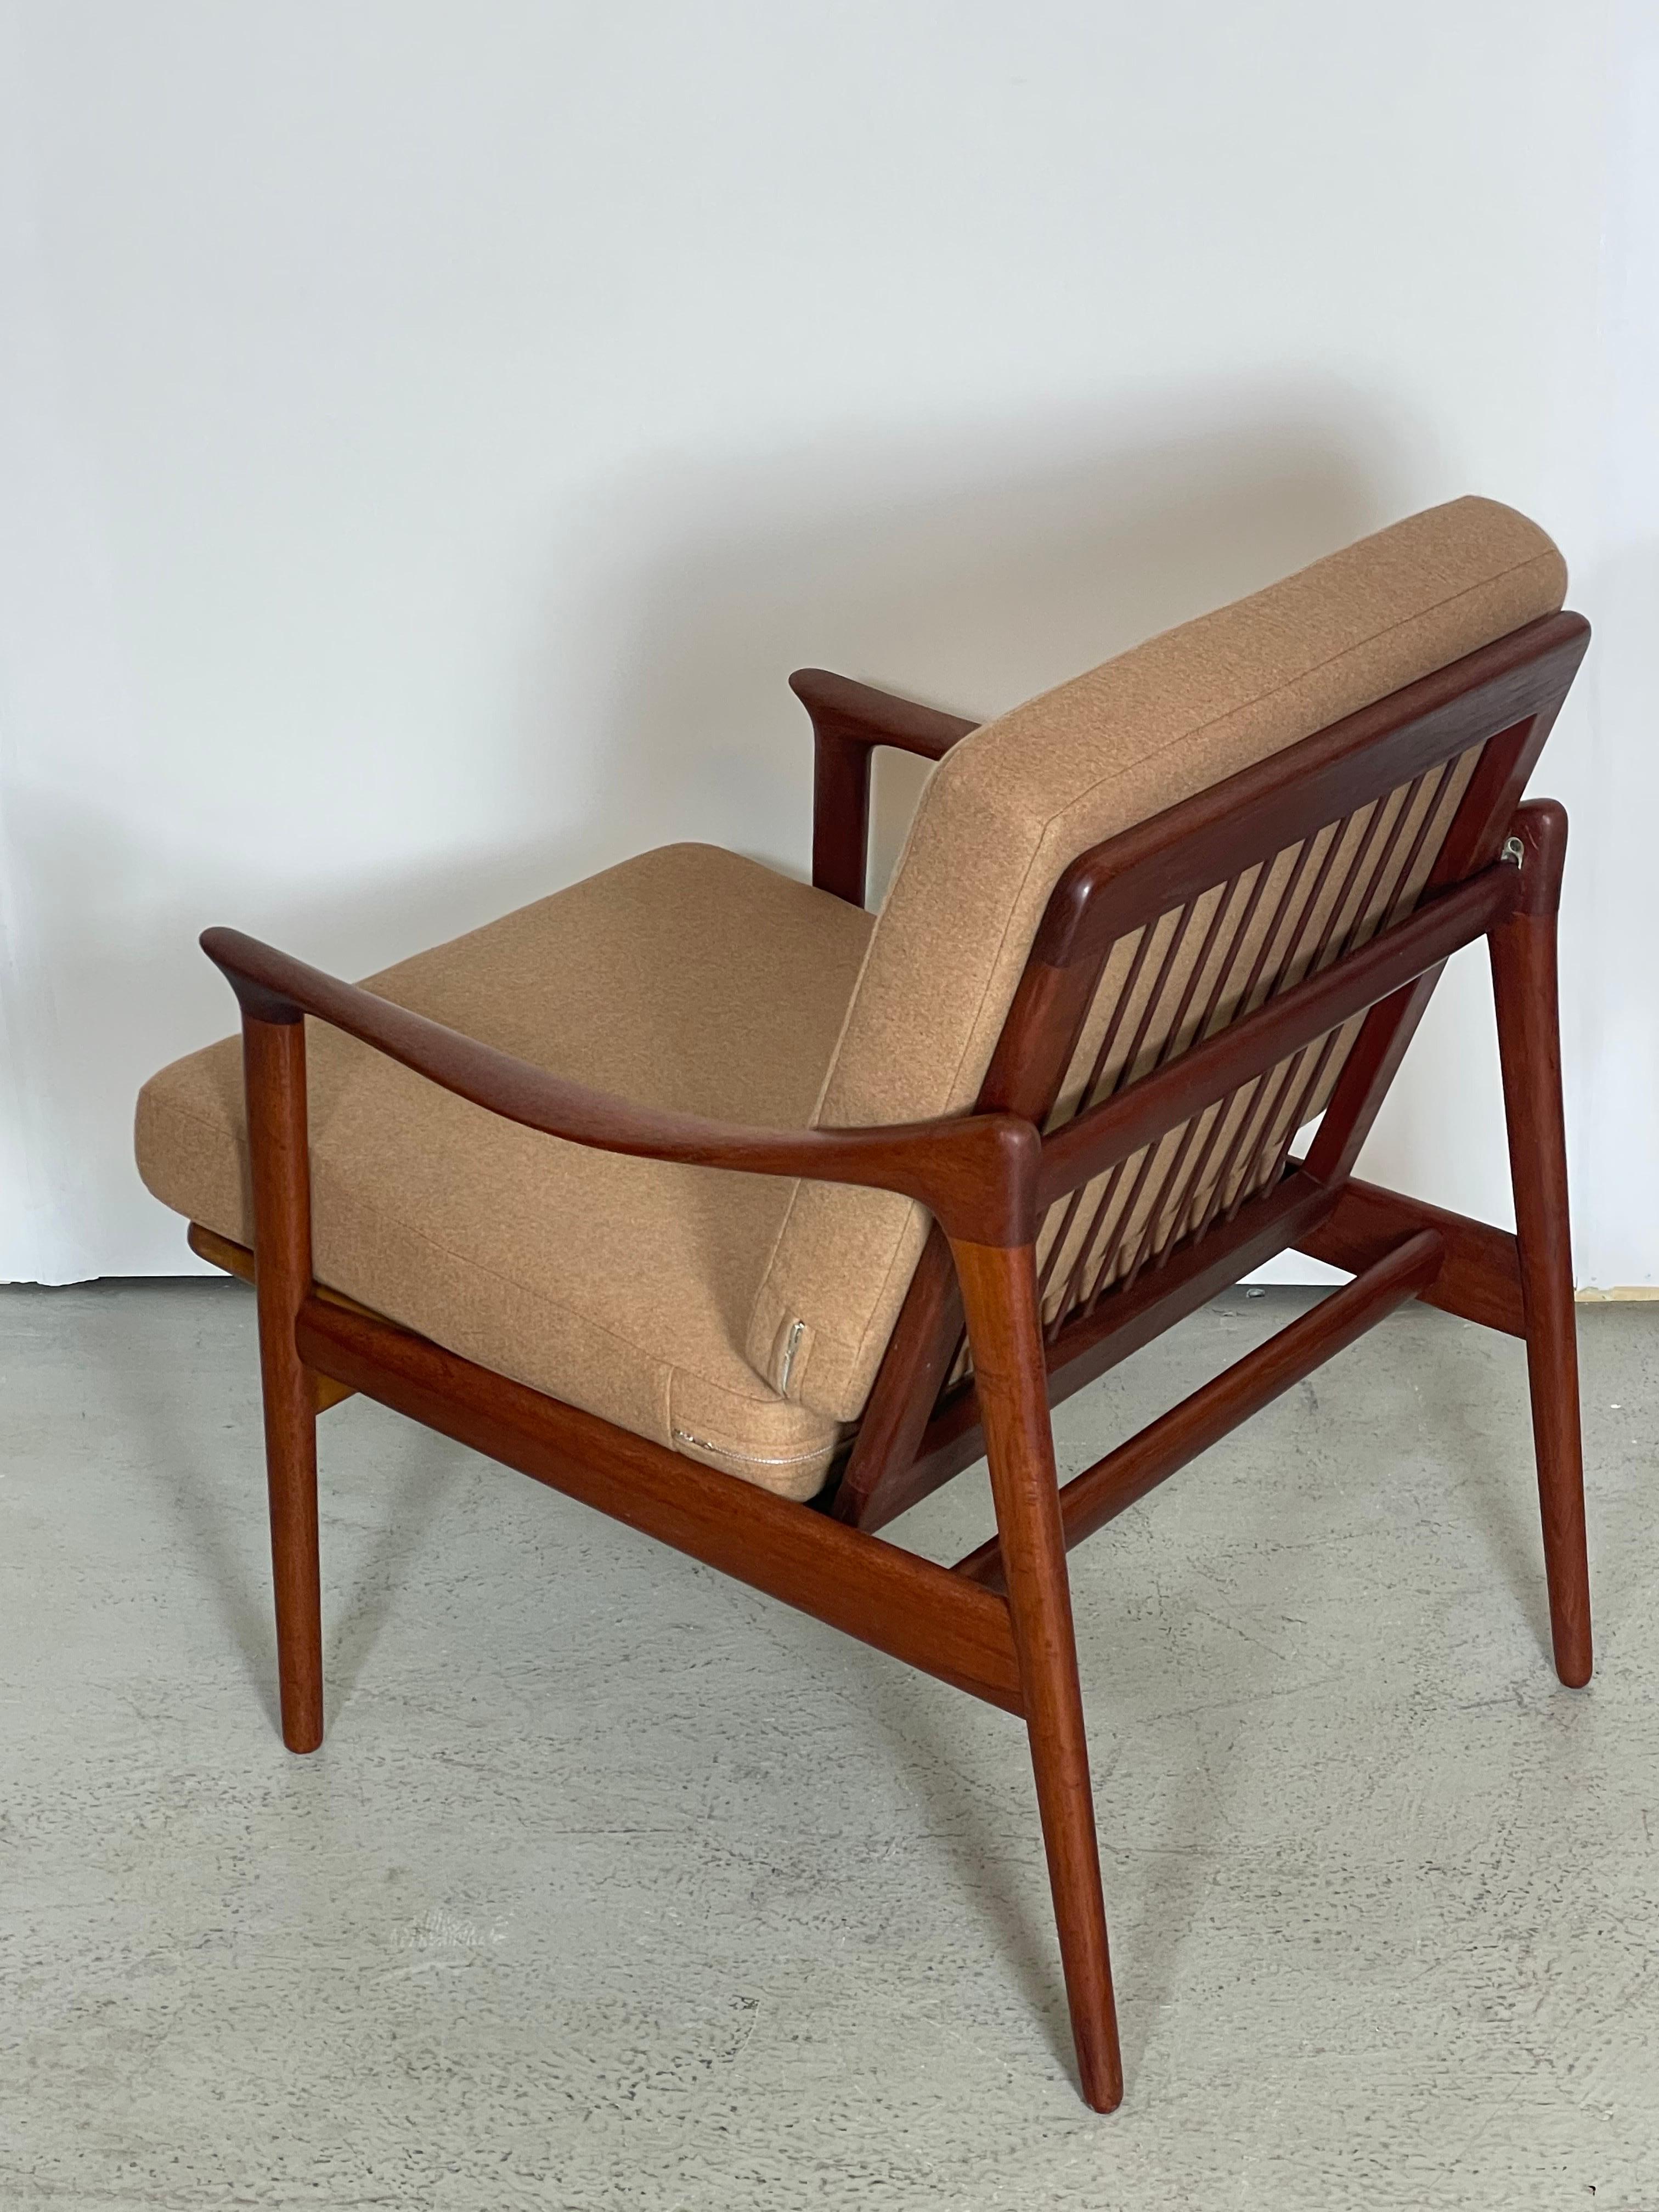 Une chaise longue compacte brillamment conçue en teck sculpté et tapissée de laine cognac, conçue par le designer industriel norvégien Fredrik A. Kayser, dans les années 1950. Ce cadre présente une construction entièrement démontable, les deux